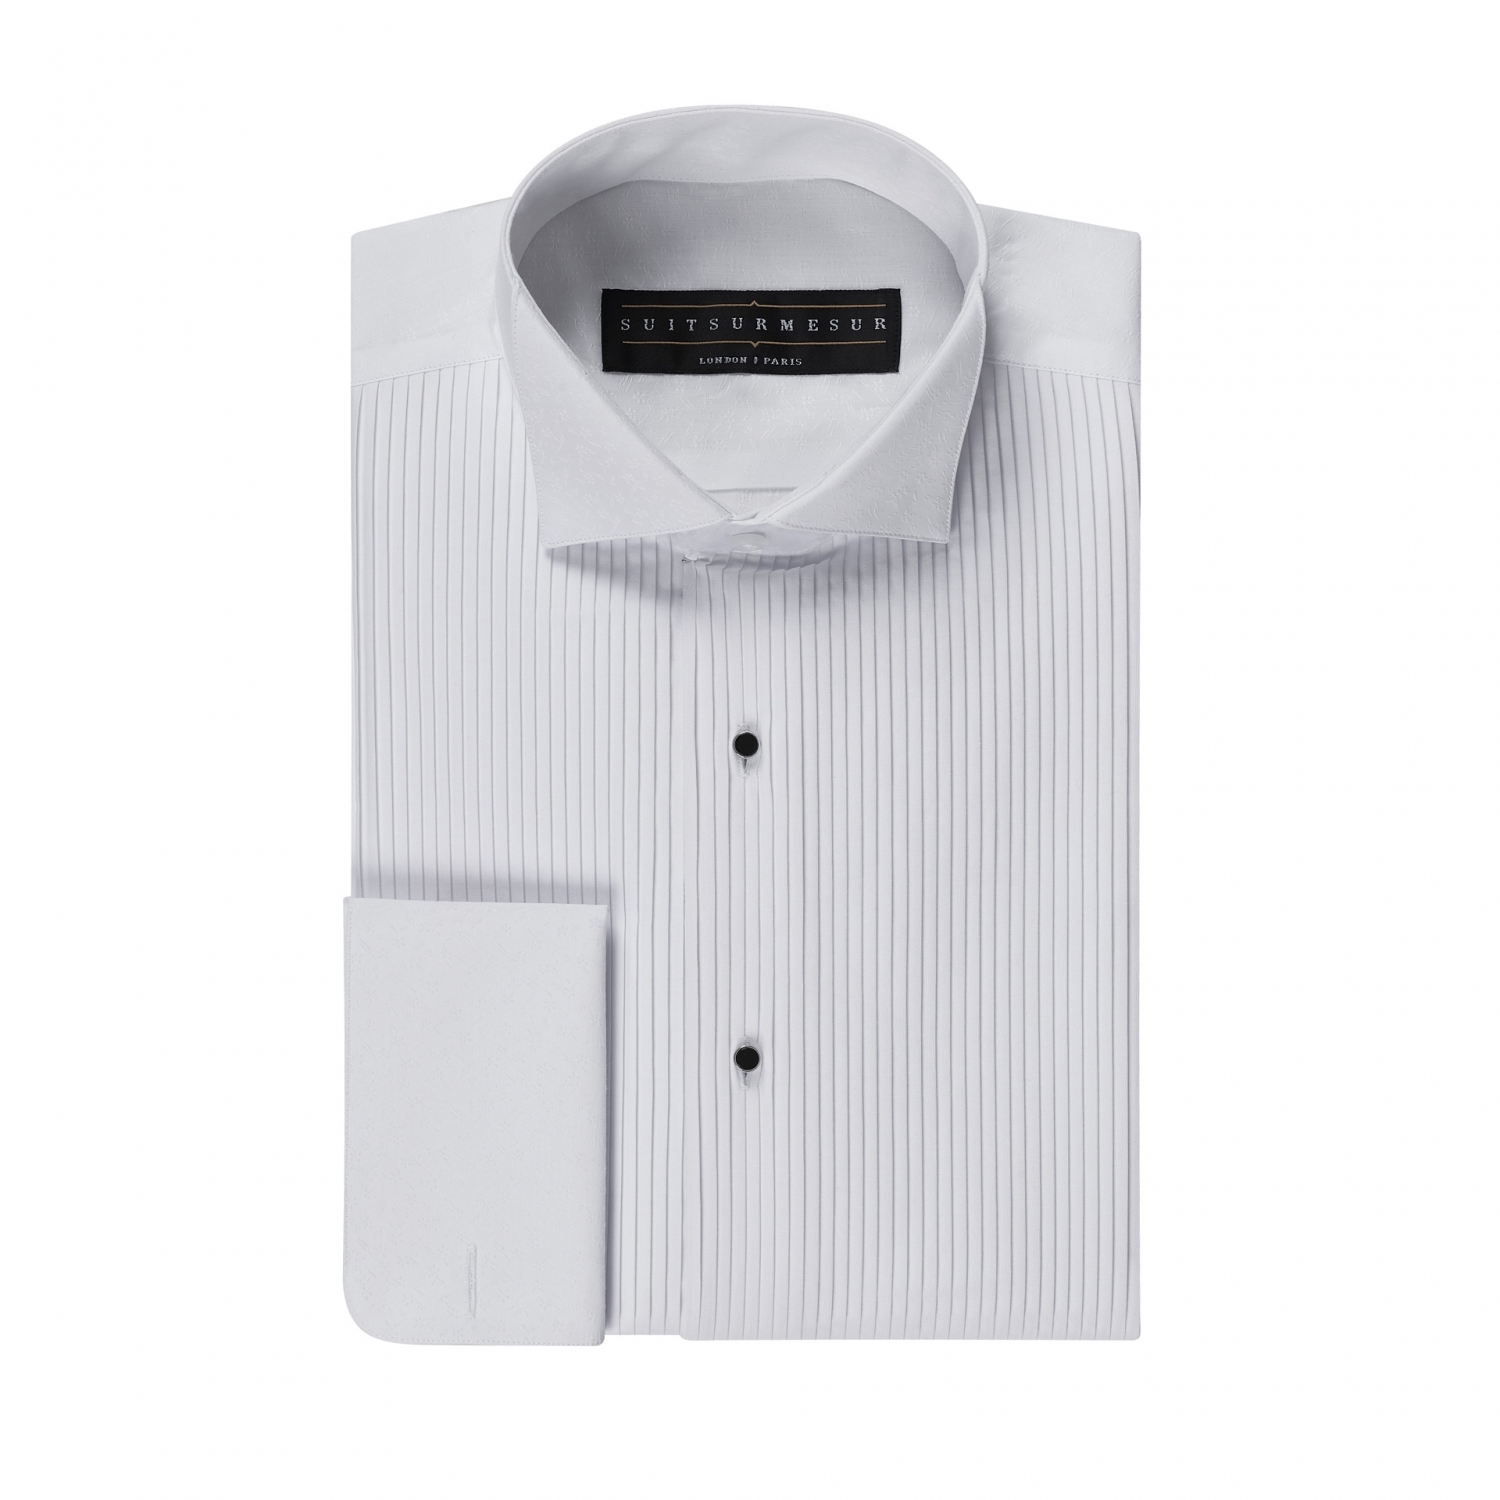 White floral (black tie tuxedo) shirt – 100% cotton